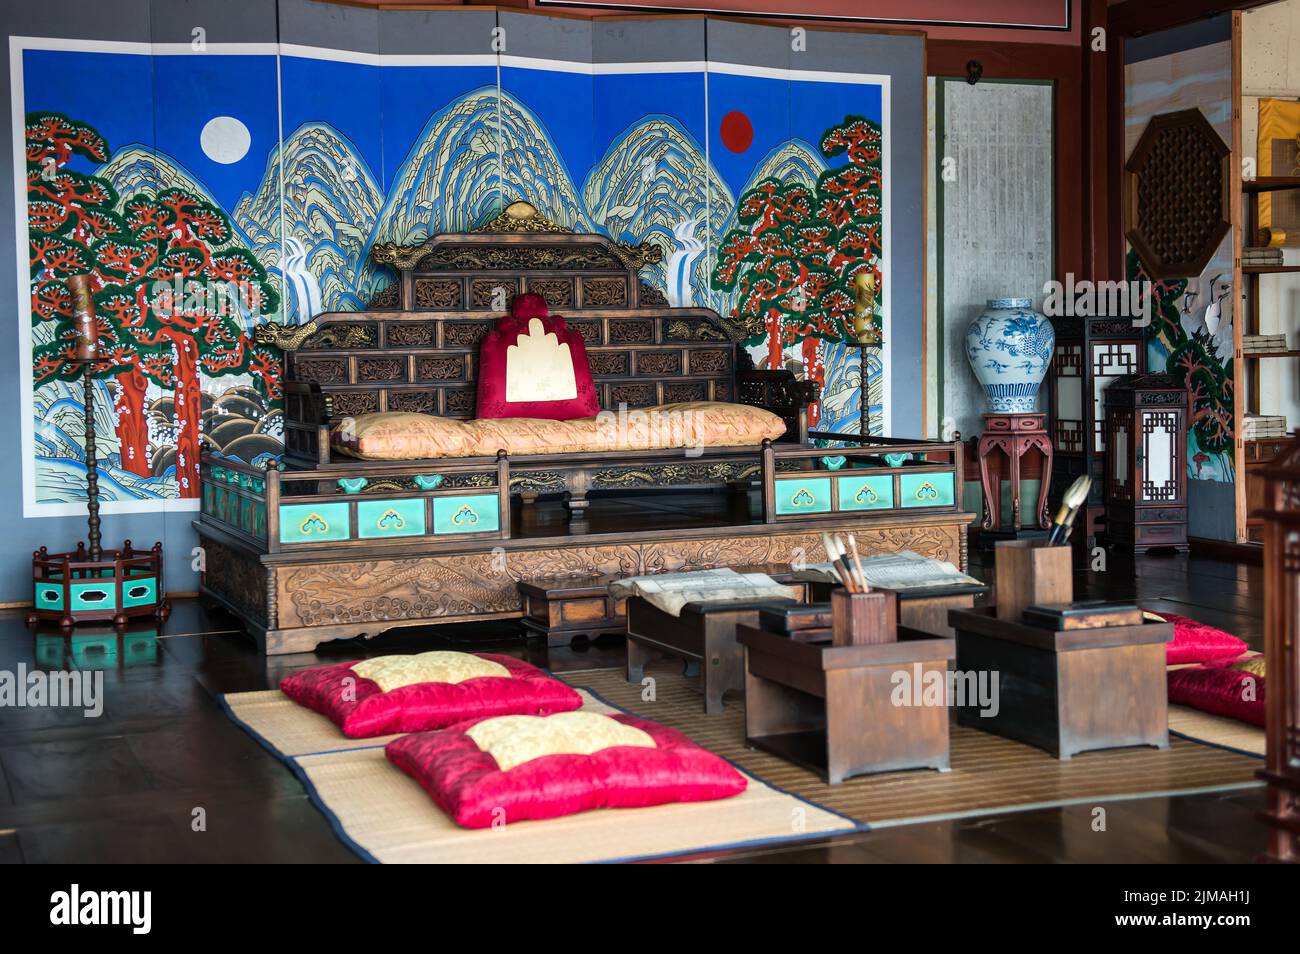 Hwaseong Haenggung Palace - magnifique intérieur traditionnel. Photo prise sur 23 décembre 2016 Banque D'Images